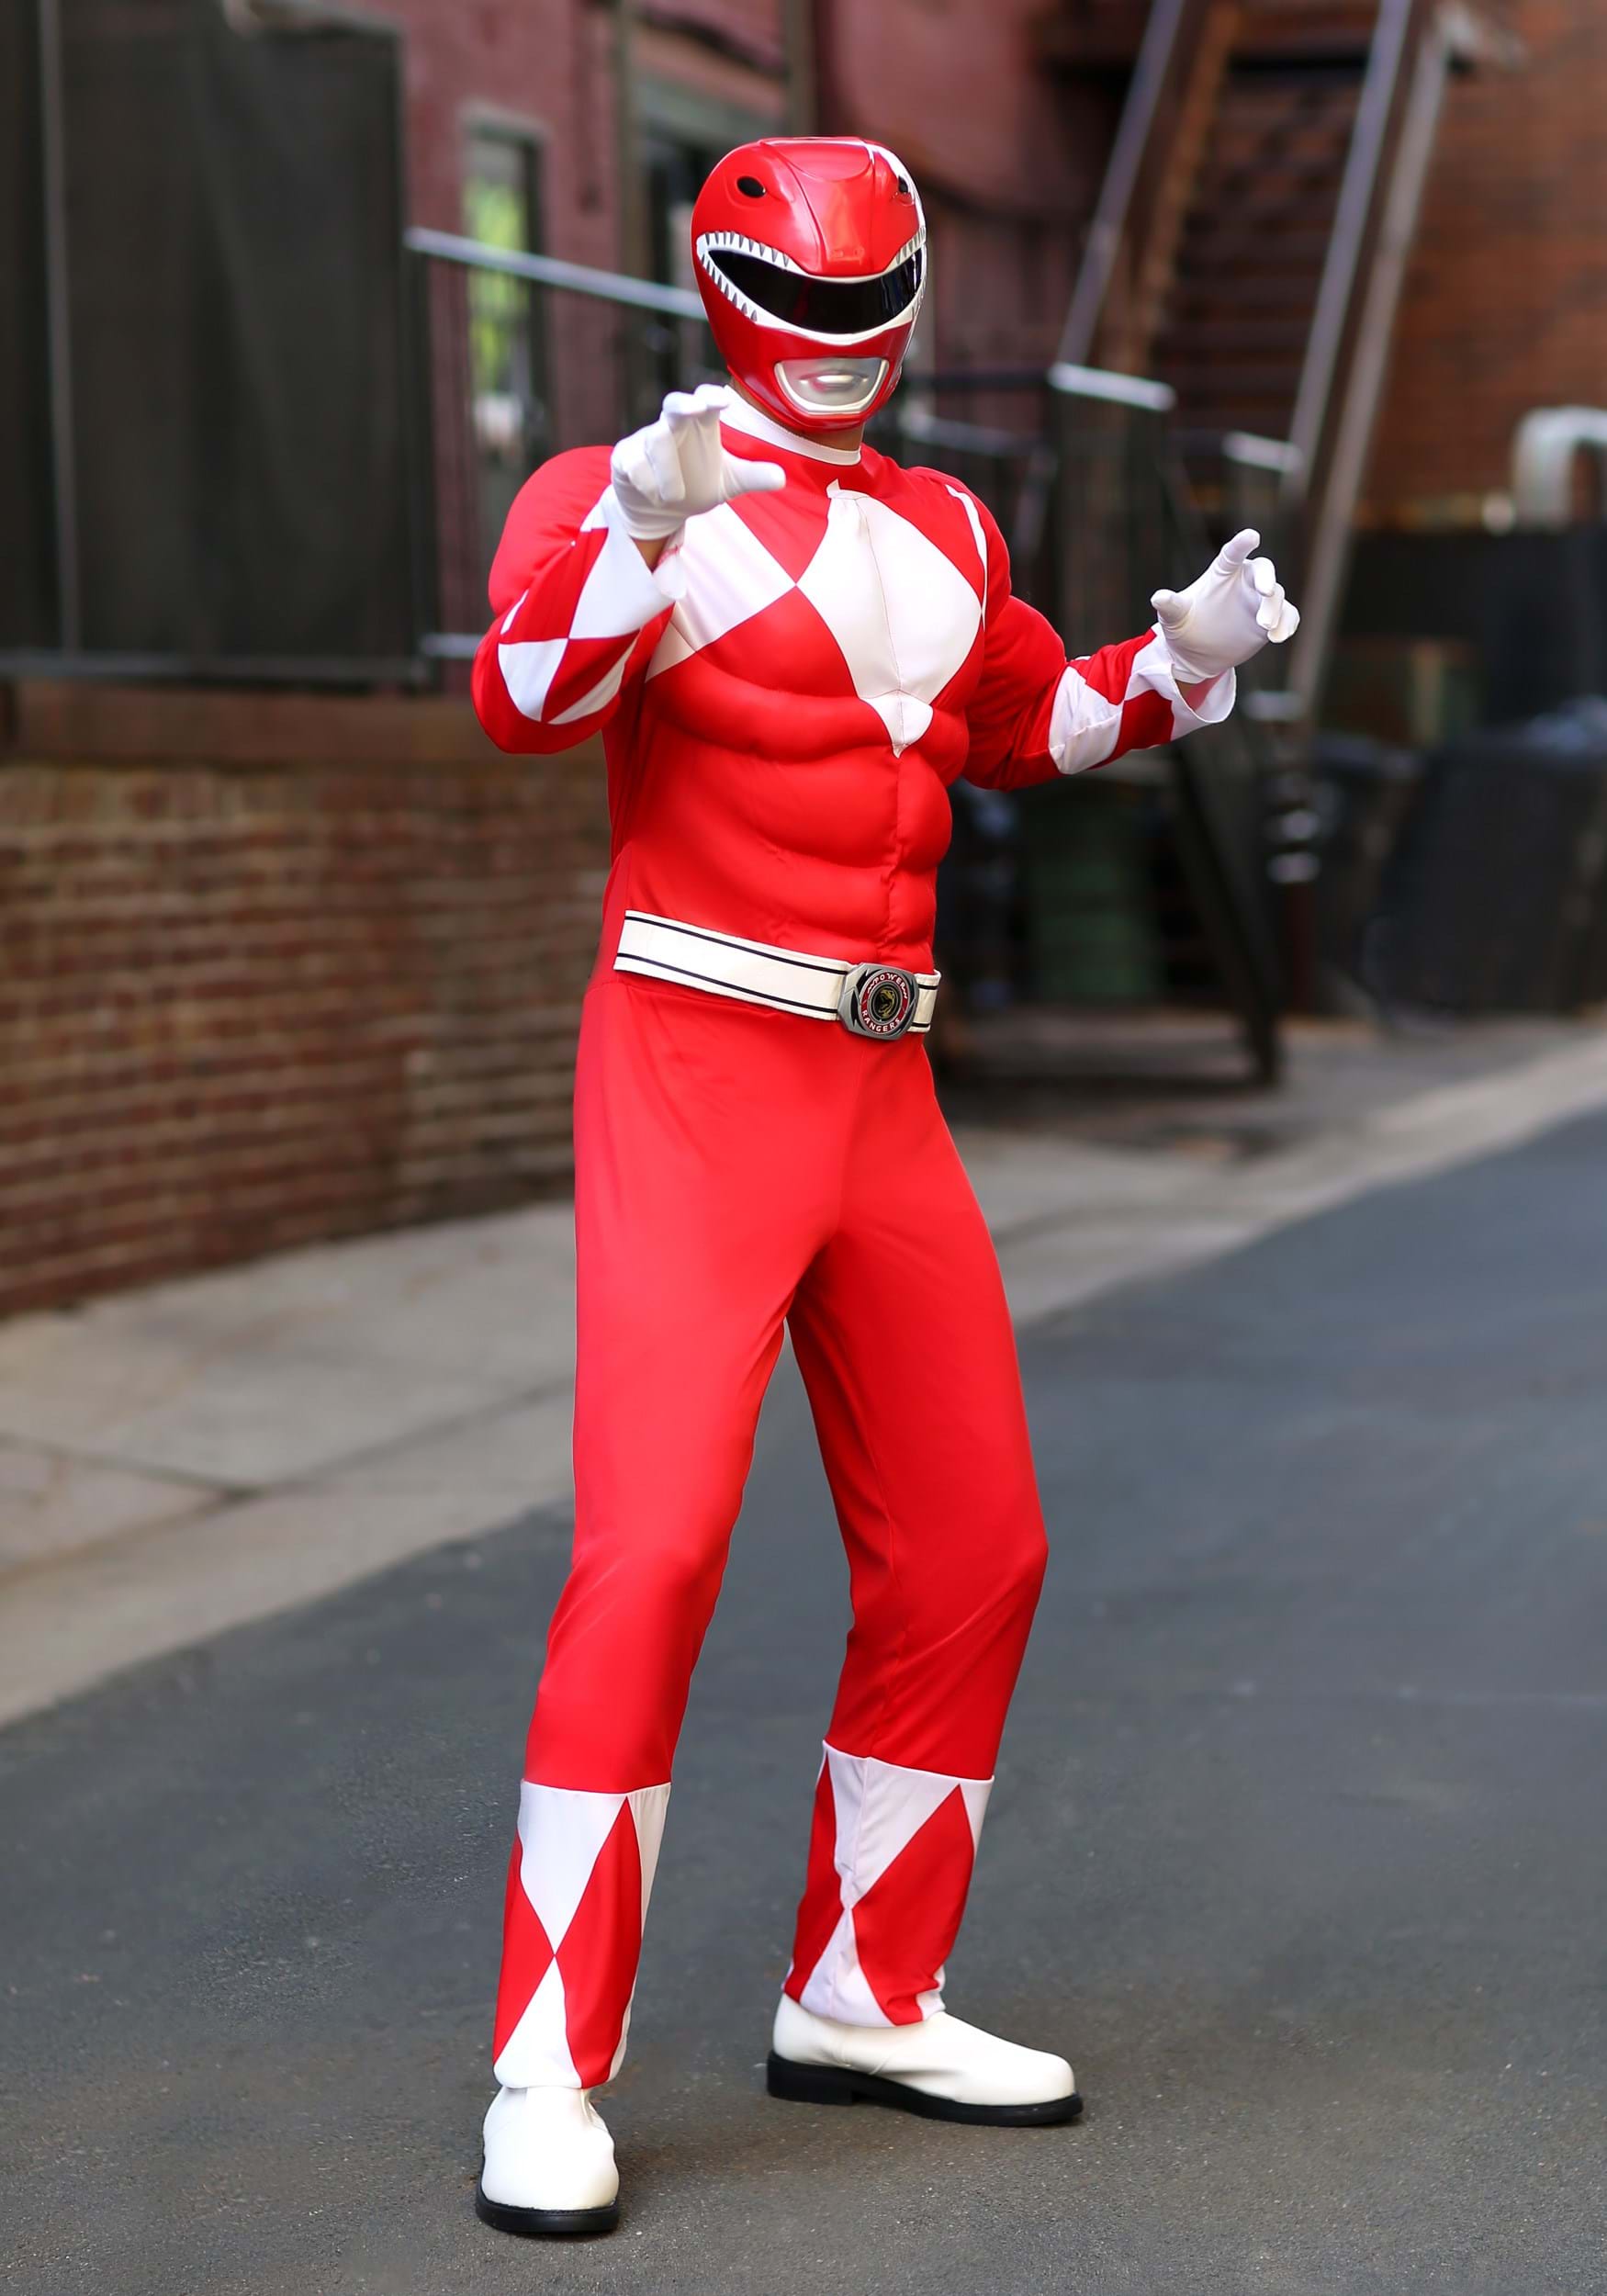 Power Rangers Men's Red Ranger Muscle Costume